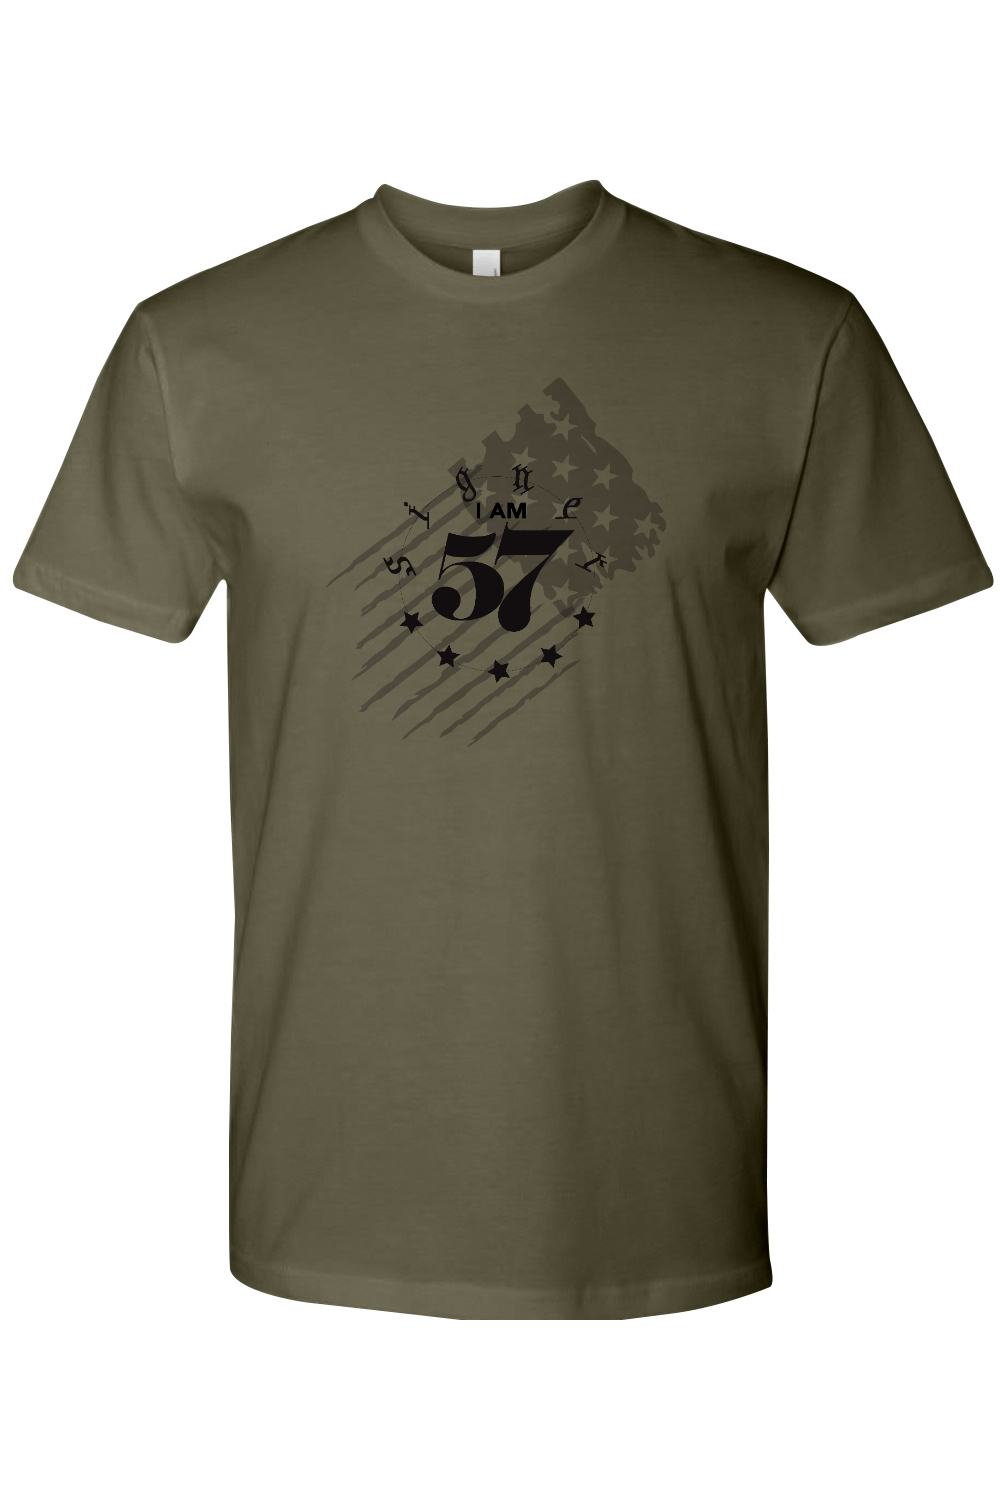 UNISEX T-Shirt - I Am Signer57